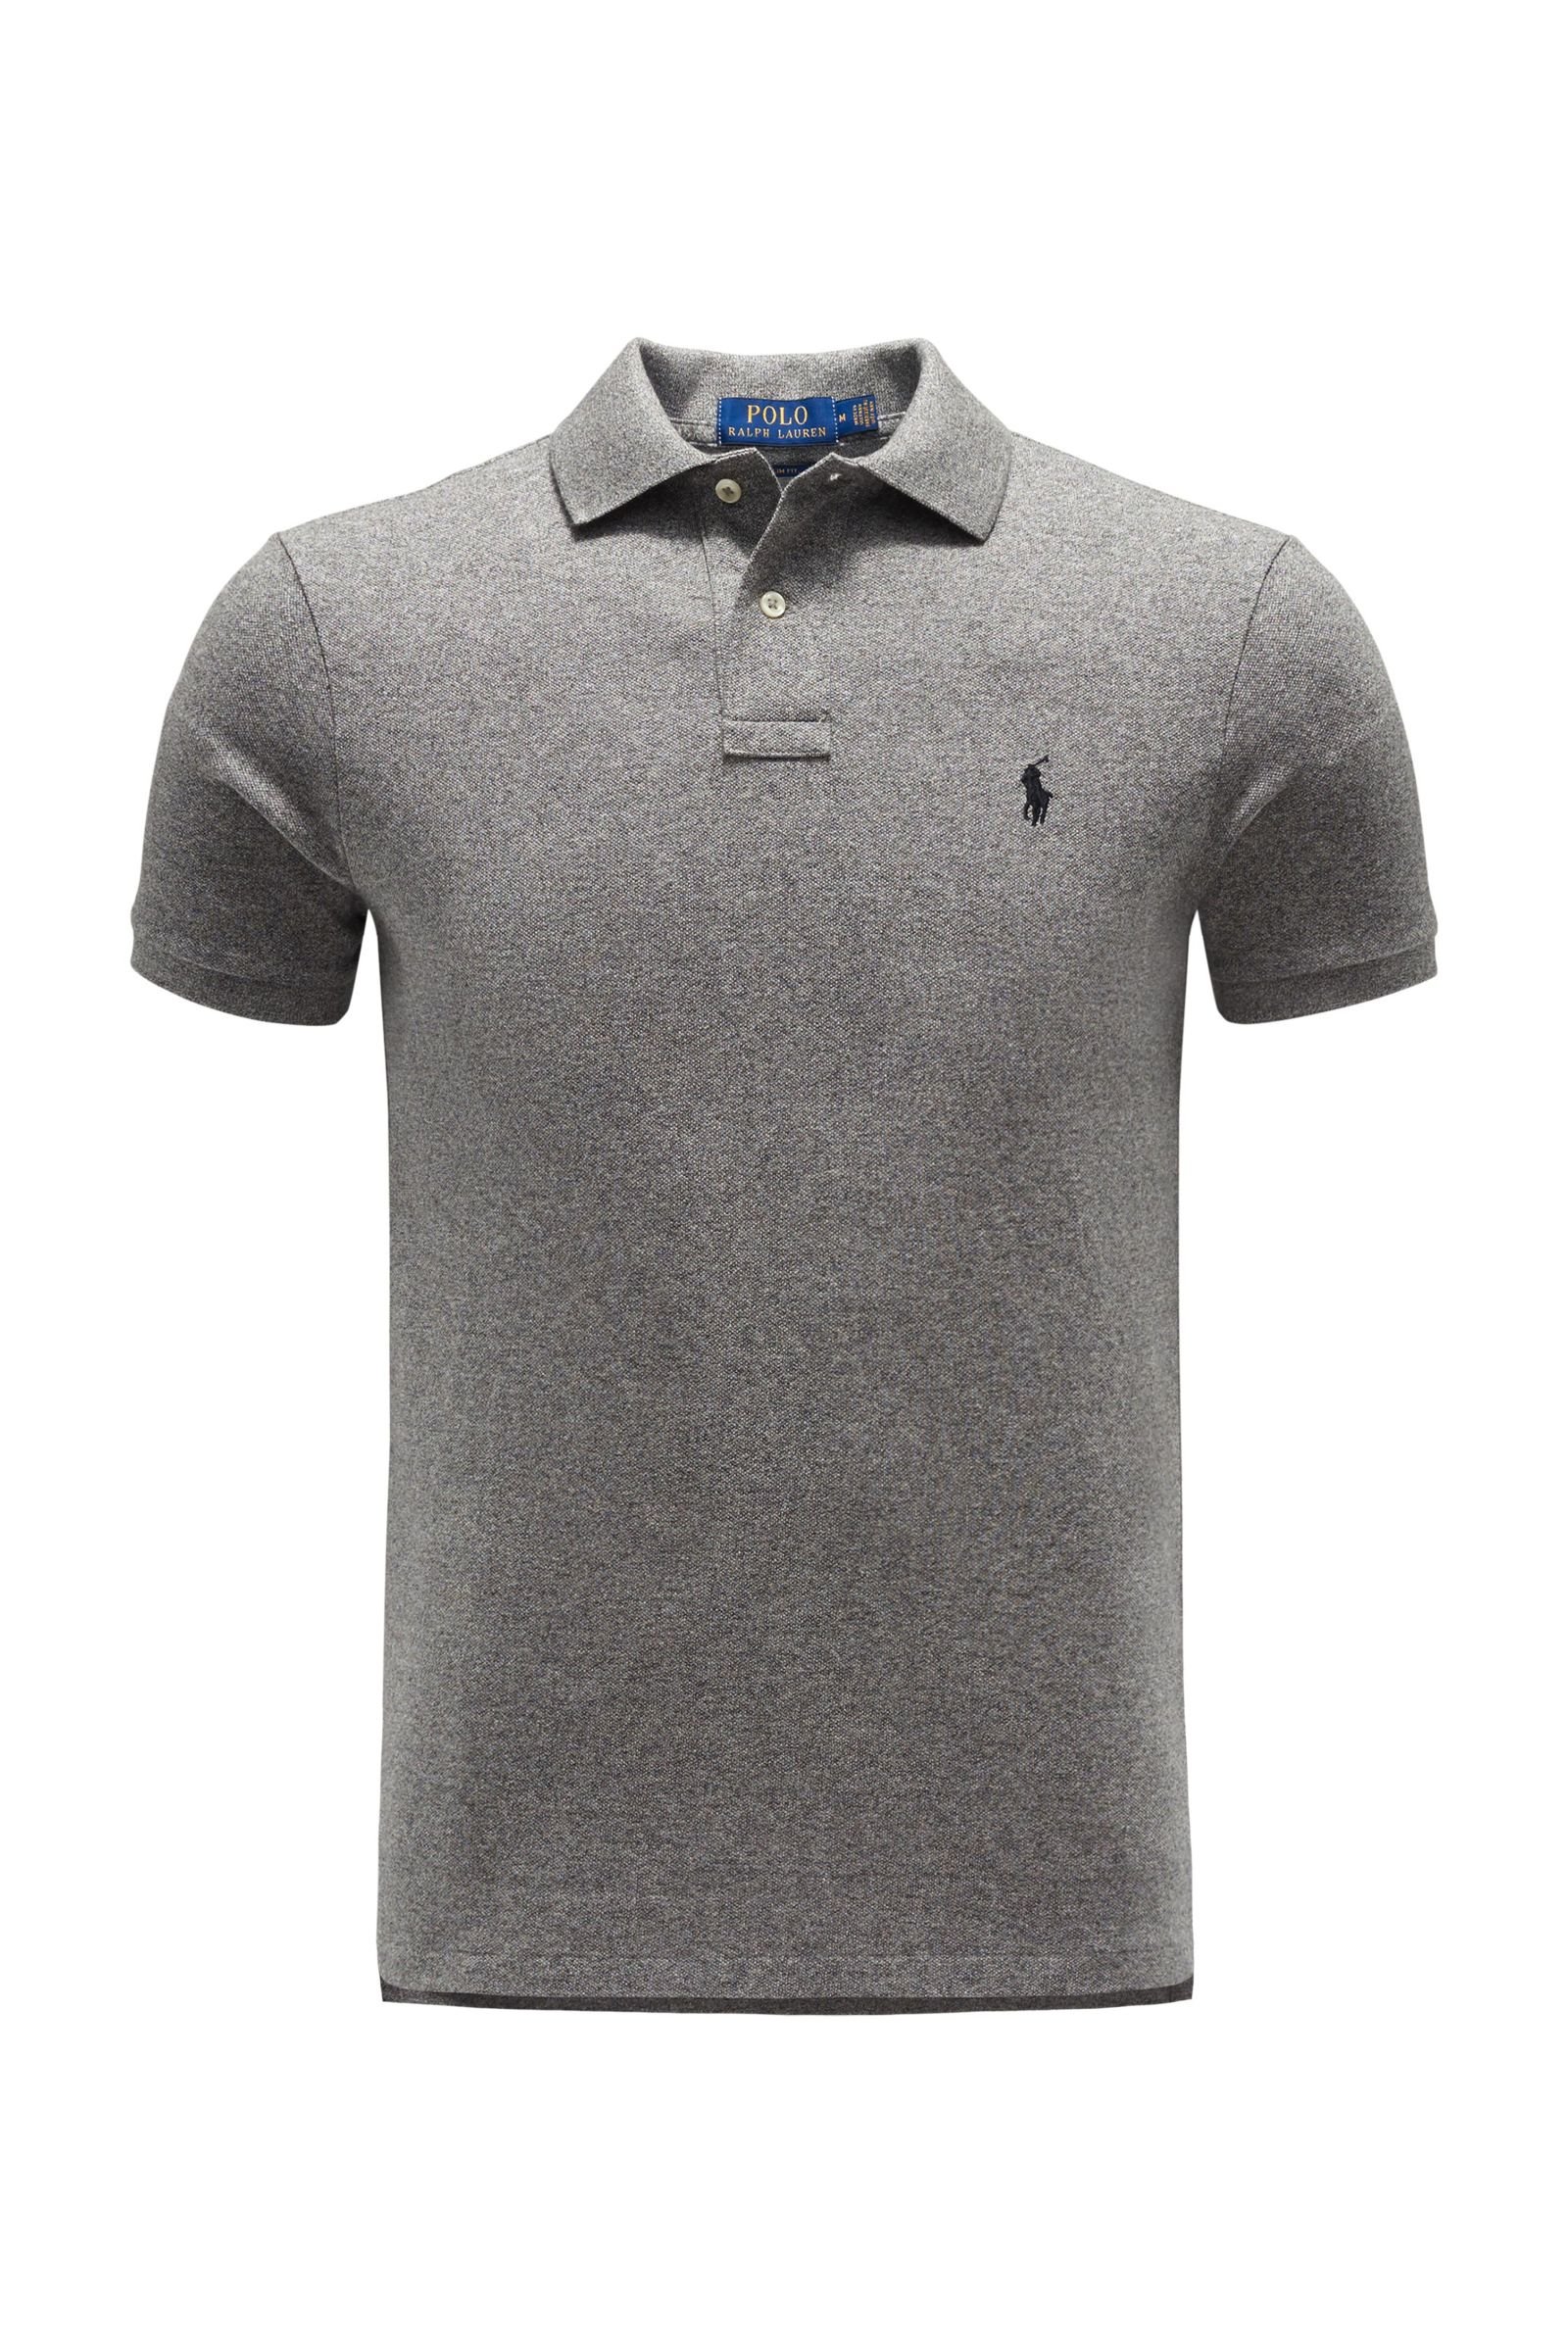 gray ralph lauren polo shirt